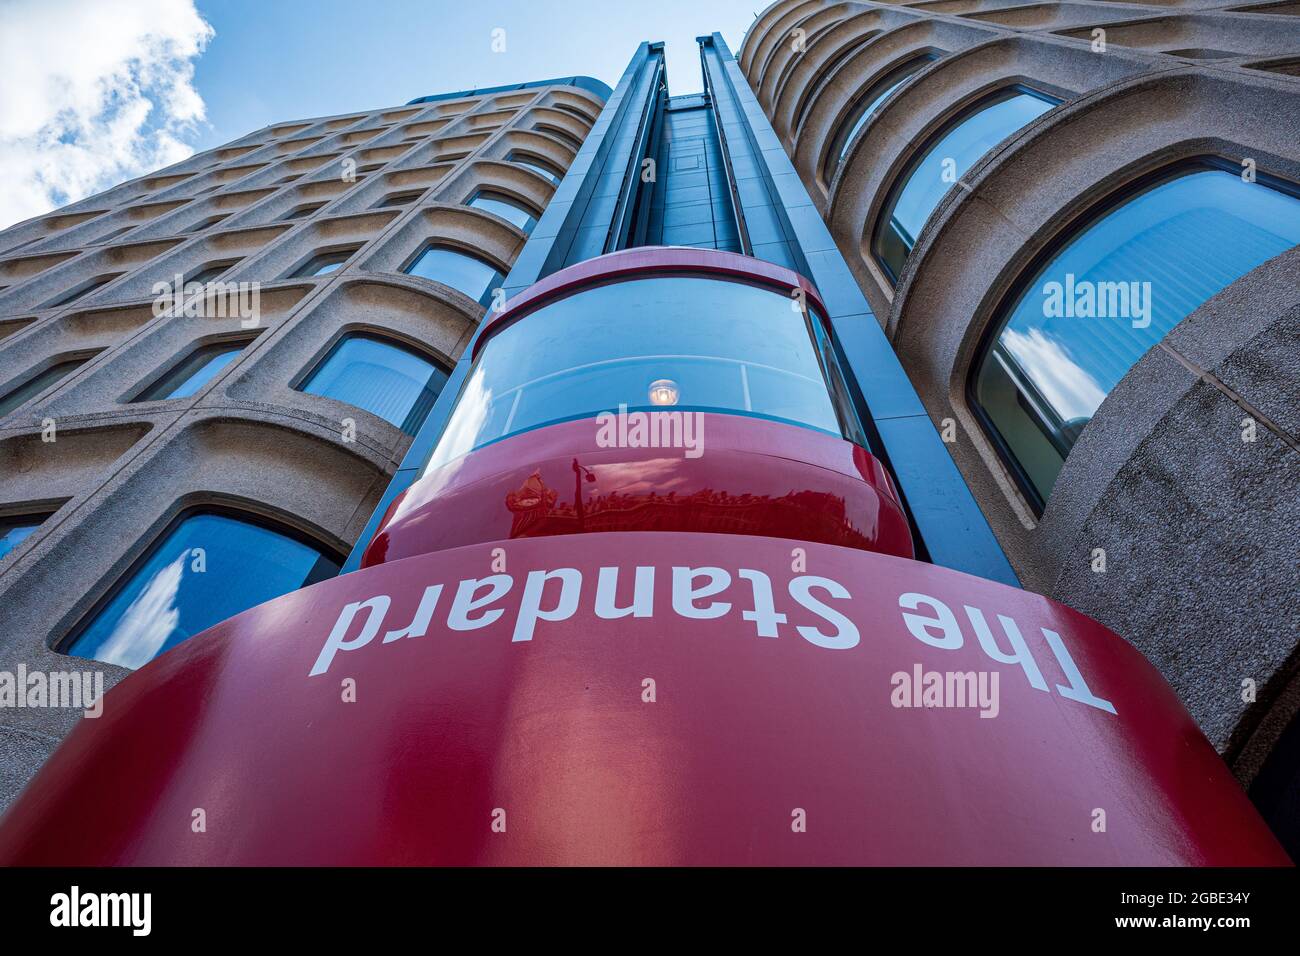 Standard Hotel London - El peculiar ascensor rojo exterior del Standard Hotel, Kings Cross London, Euston Rd. Abierto en 2019. Diseño Shawn Hausman, ORMAS estructurales Foto de stock